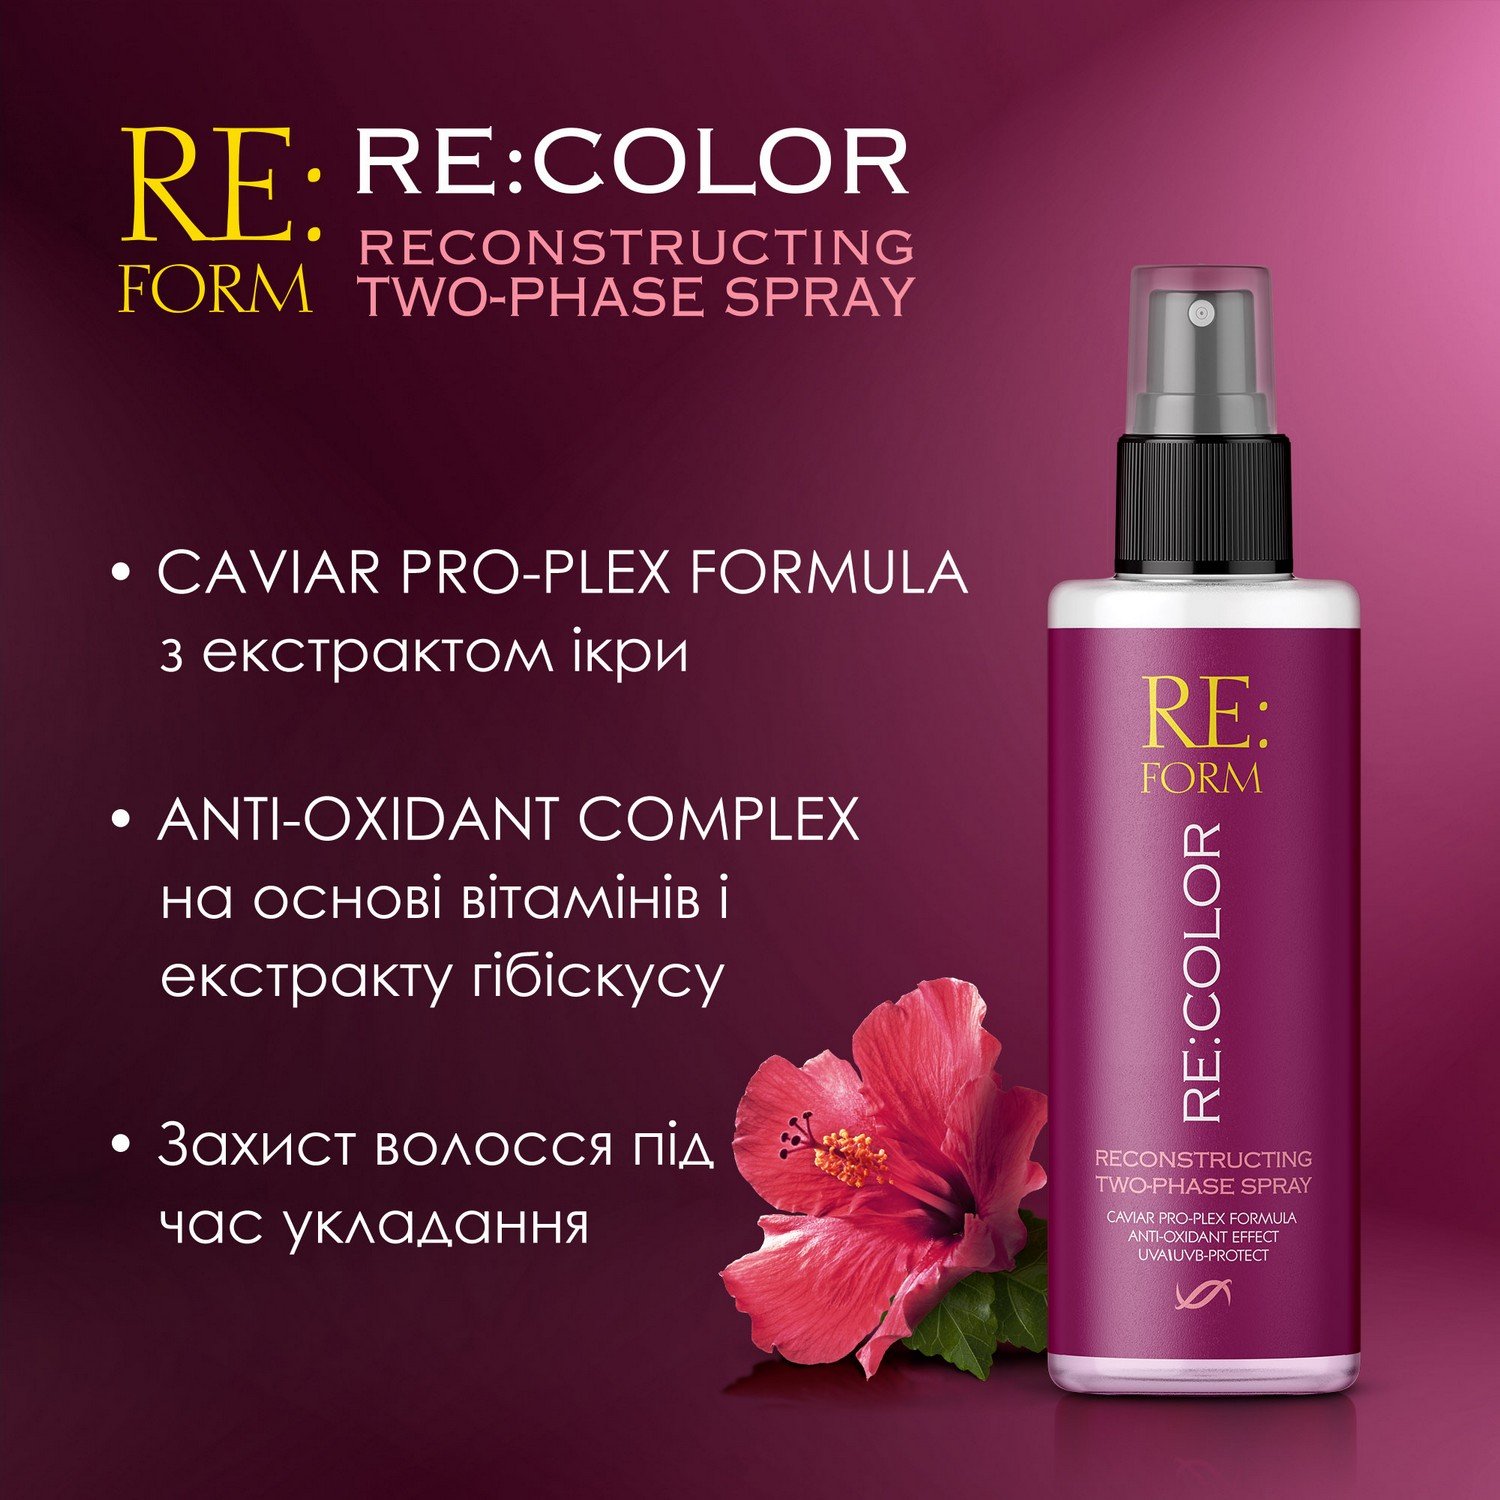 Реконструирующий двухфазный спрей Re:form Re:color Сохранение цвета и восстановление окрашенных волос, 200 мл - фото 5